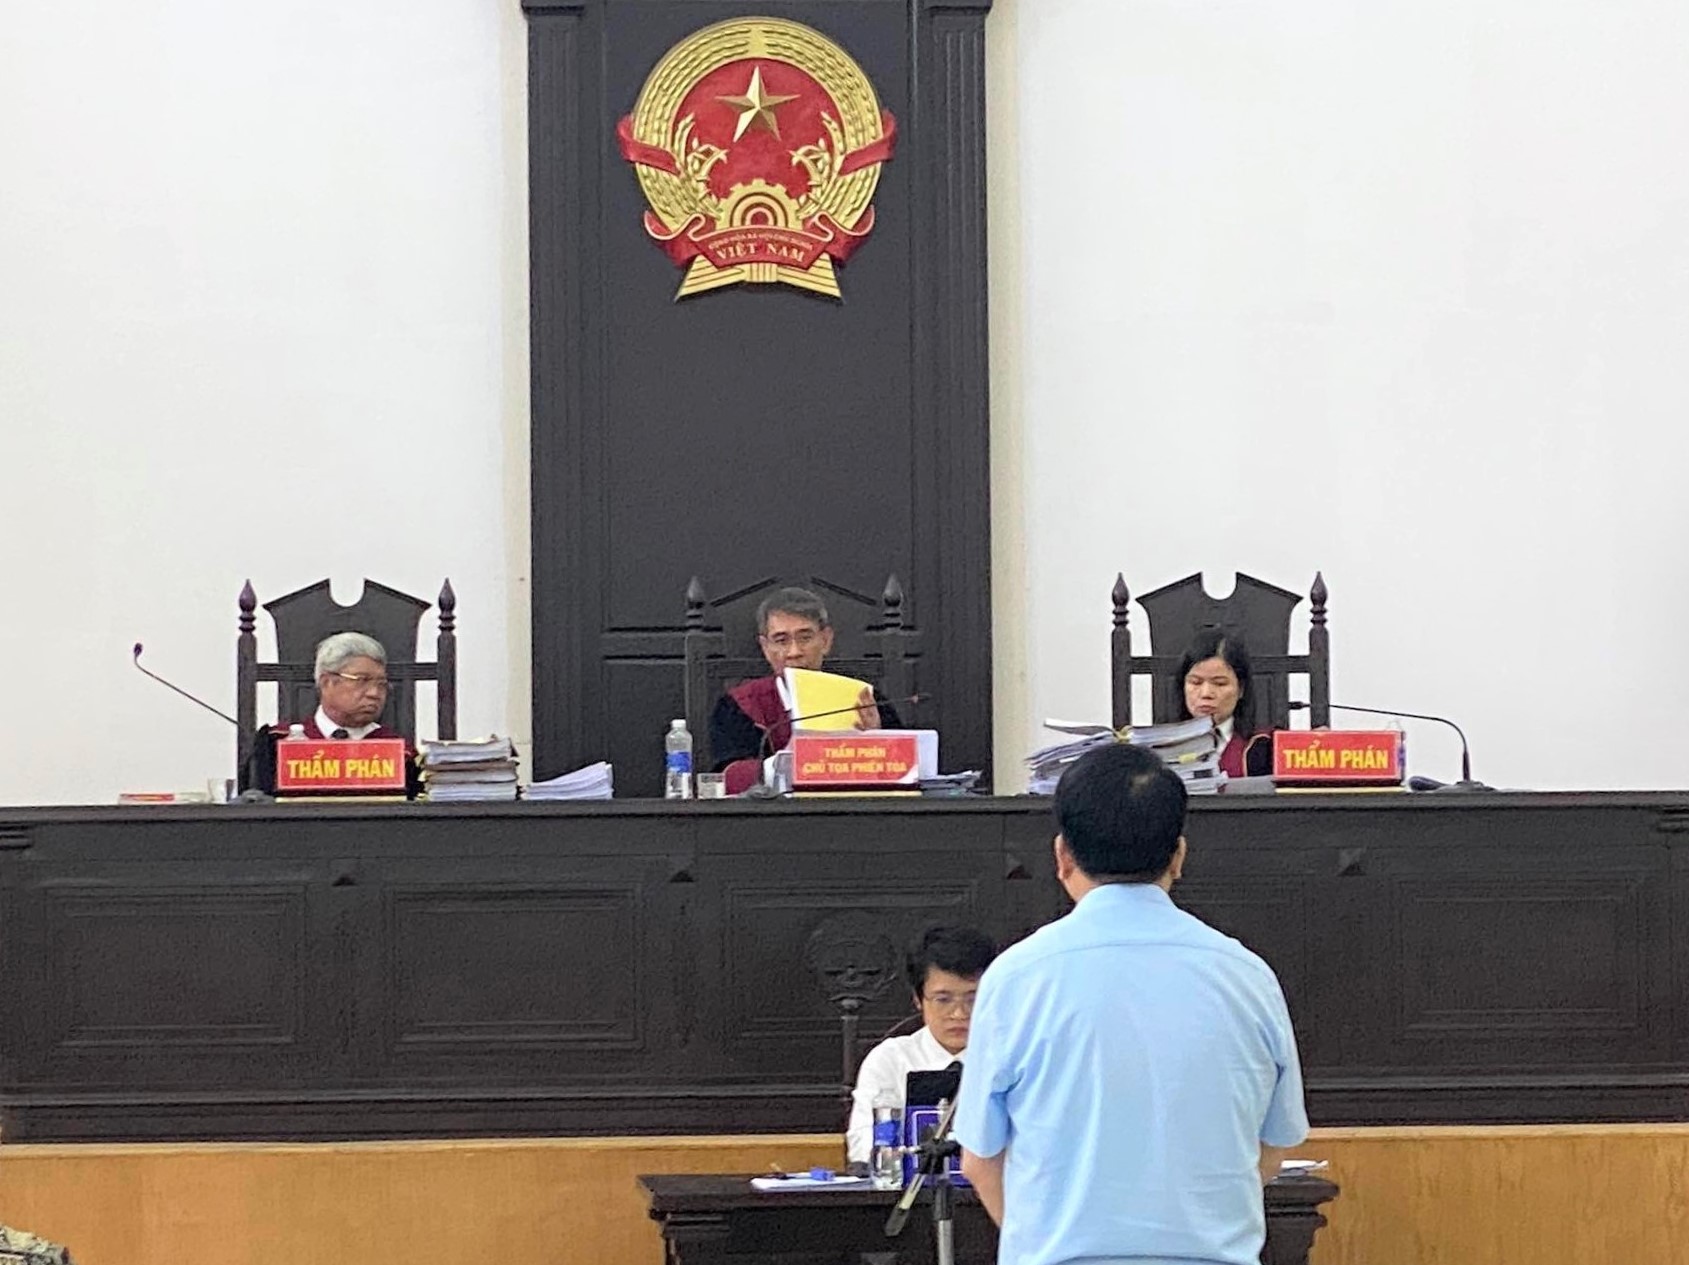 Tòa án đã nhận giấy khen của cựu Chủ tịch Hà Nội Nguyễn Đức Chung - Ảnh 2.